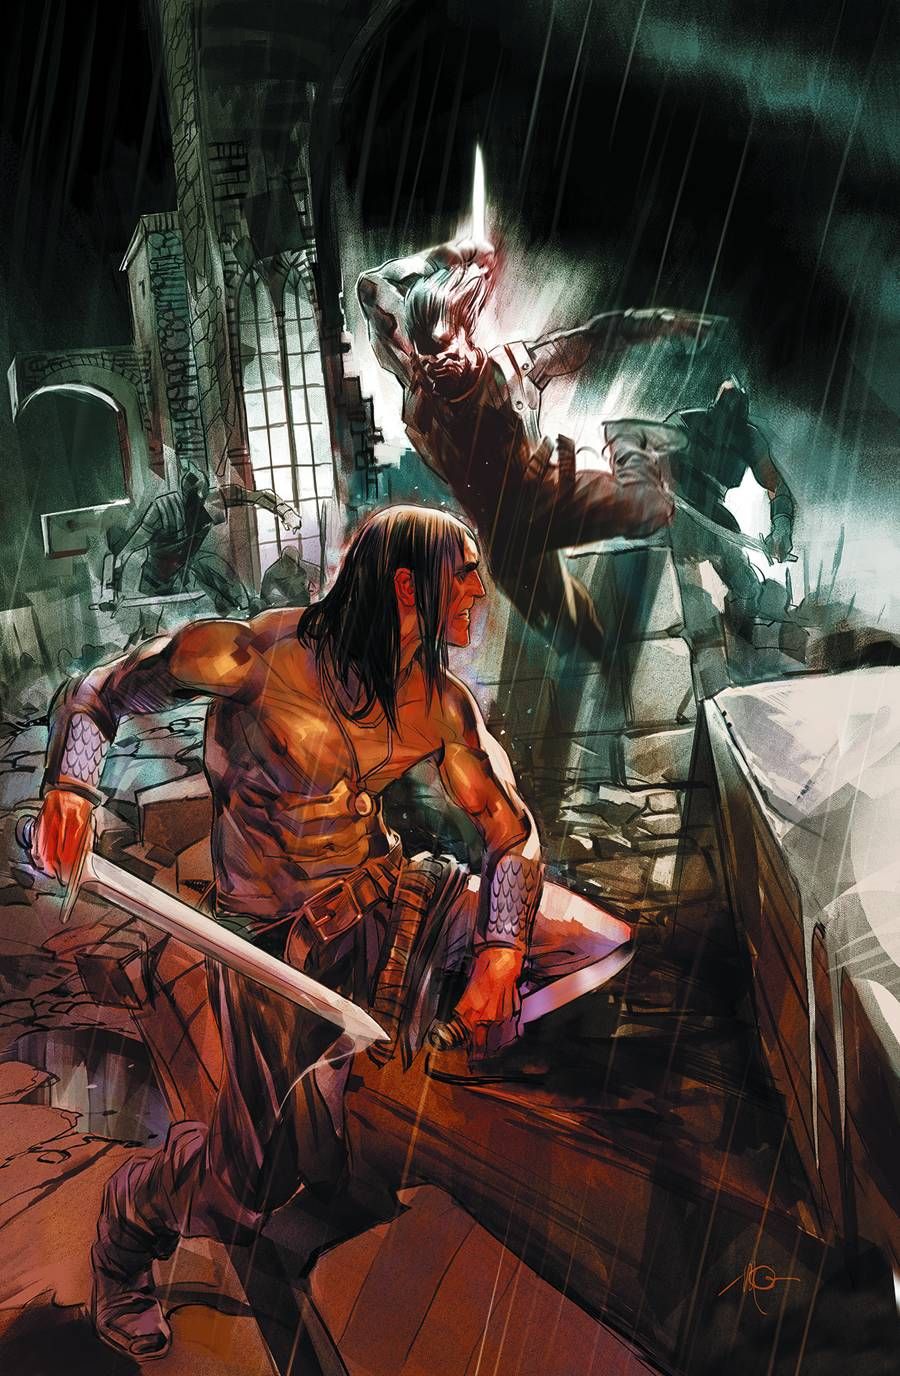 Conan the Barbarian #19 Comic